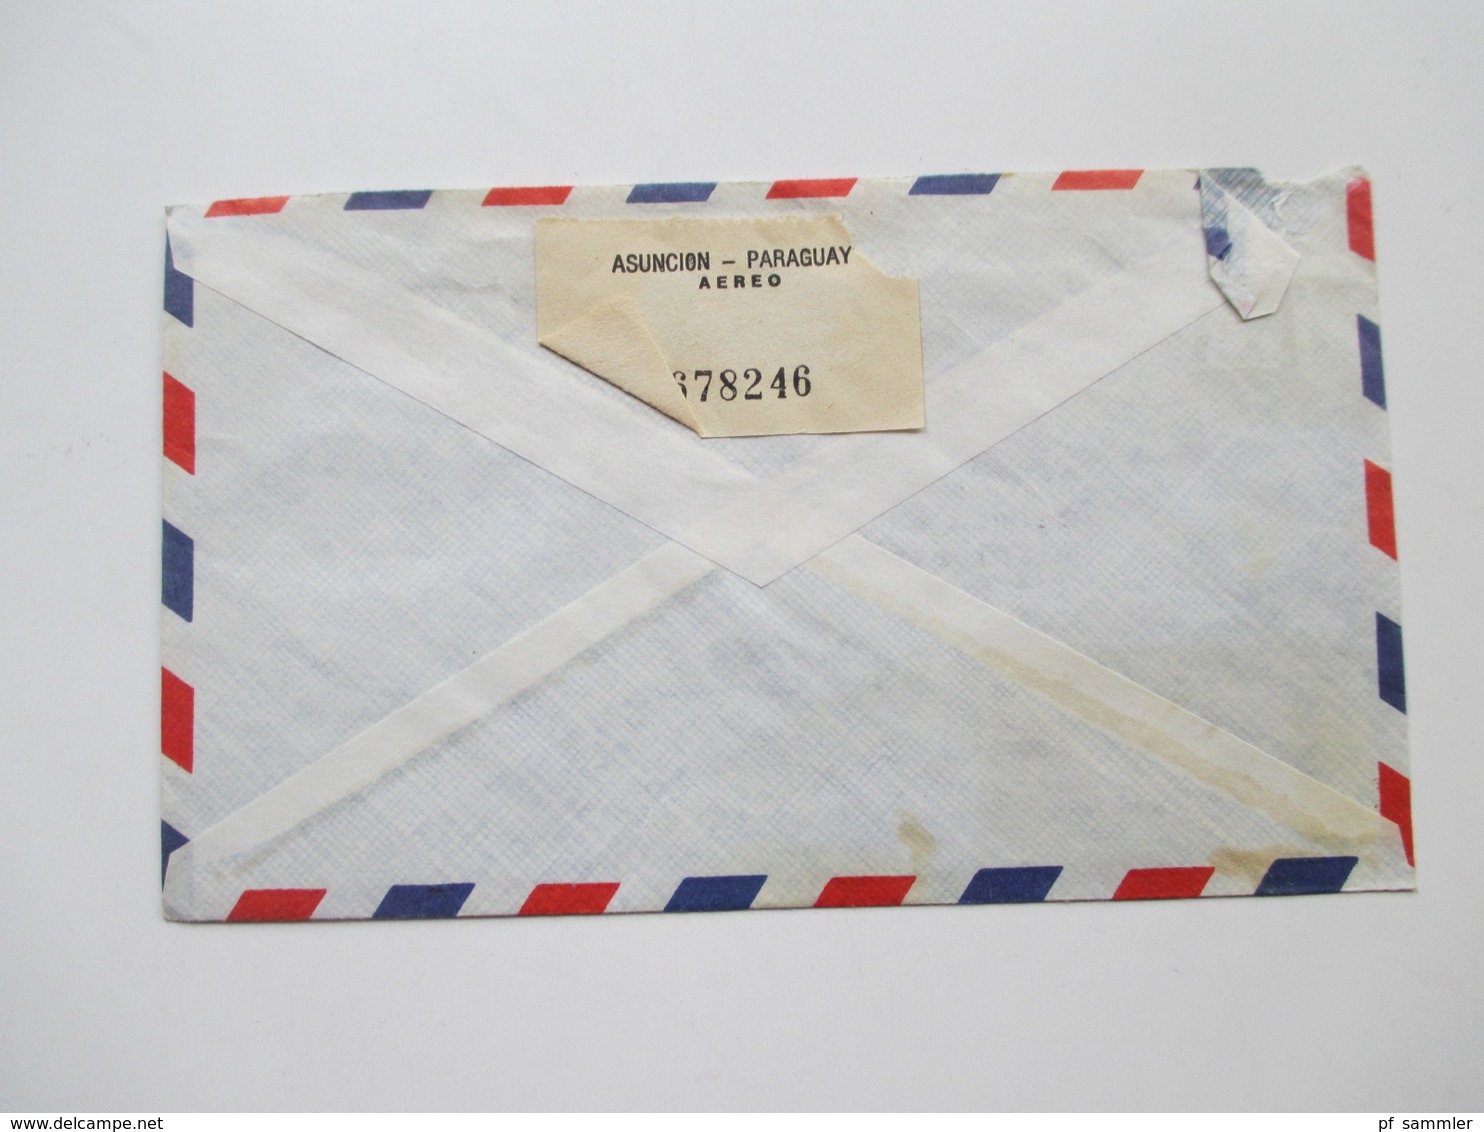 Paraguay ca. 1972 - 82 Korrespondenz 25 Luftpost Briefe. einige mit Inhalt! Certificado. Erwin Abraham S.R.L.